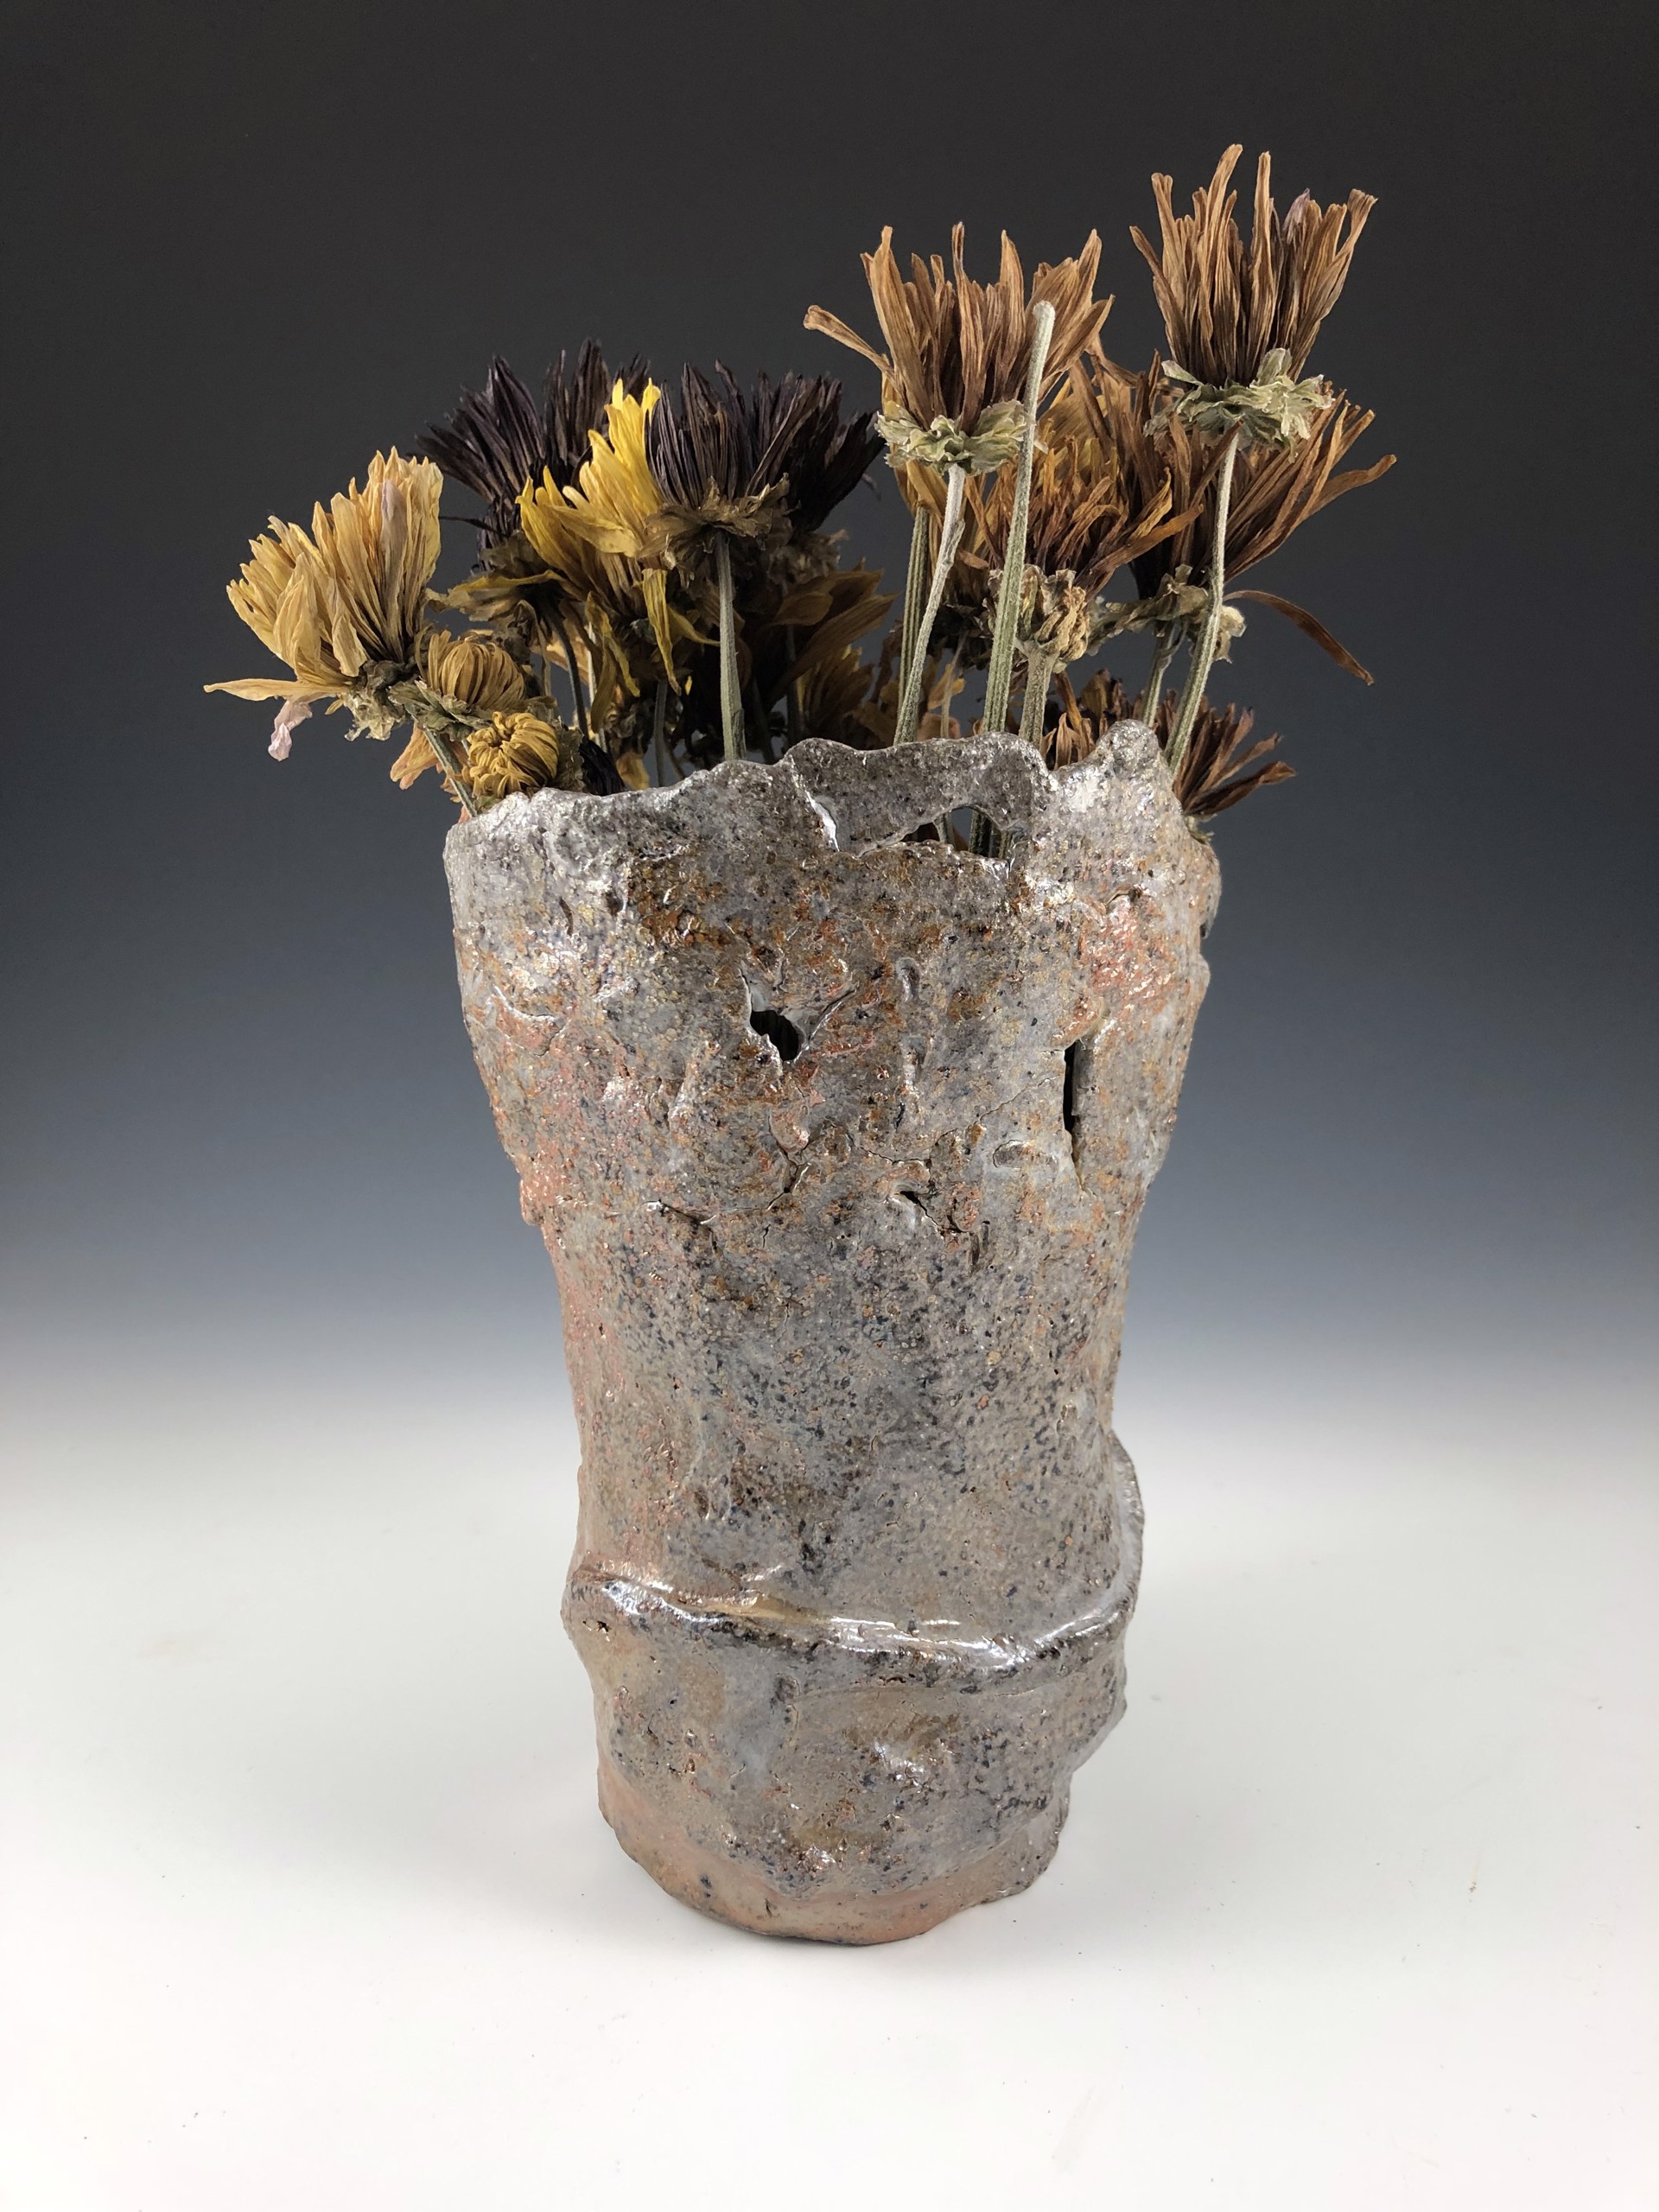 Possum Vase by Christopher St. John